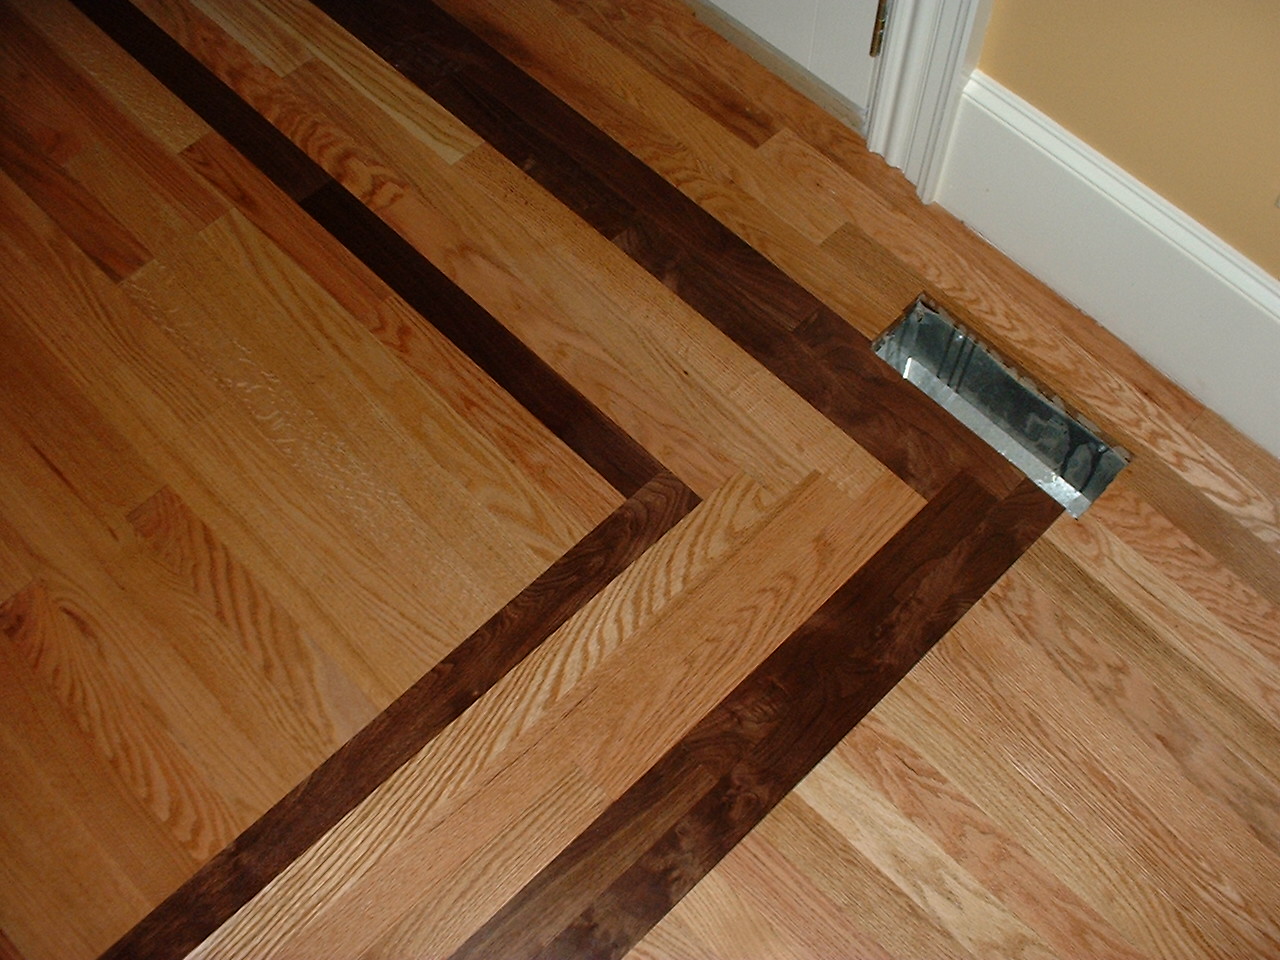 Borders Ozark Hardwood Flooring, Brooks Hardwood Floor Refinishing